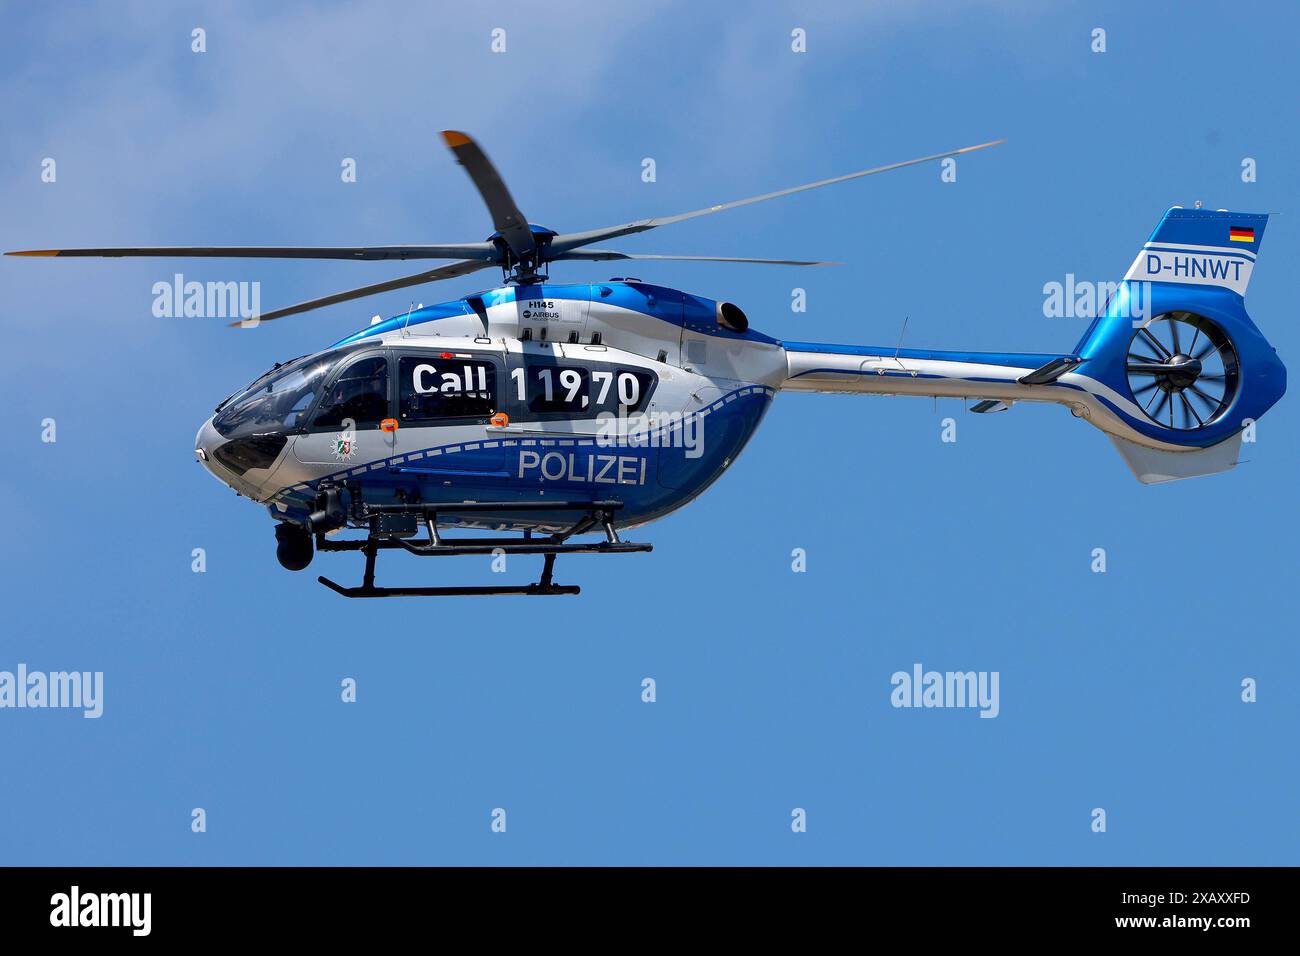 Einsatzhubschrauber der Polizei Nordrhein-Westfalen. D-HNWT AIRBUS Helicopters BK117 D2 / H145 / EC145 T2 c/n: 20107 Baujahr: 2016 *** elicottero di polizia della Renania settentrionale-Vestfalia D HNWT AIRBUS Helicopters BK117 D2 H145 EC145 T2 c n 20107 anno di costruzione 2016 Foto Stock